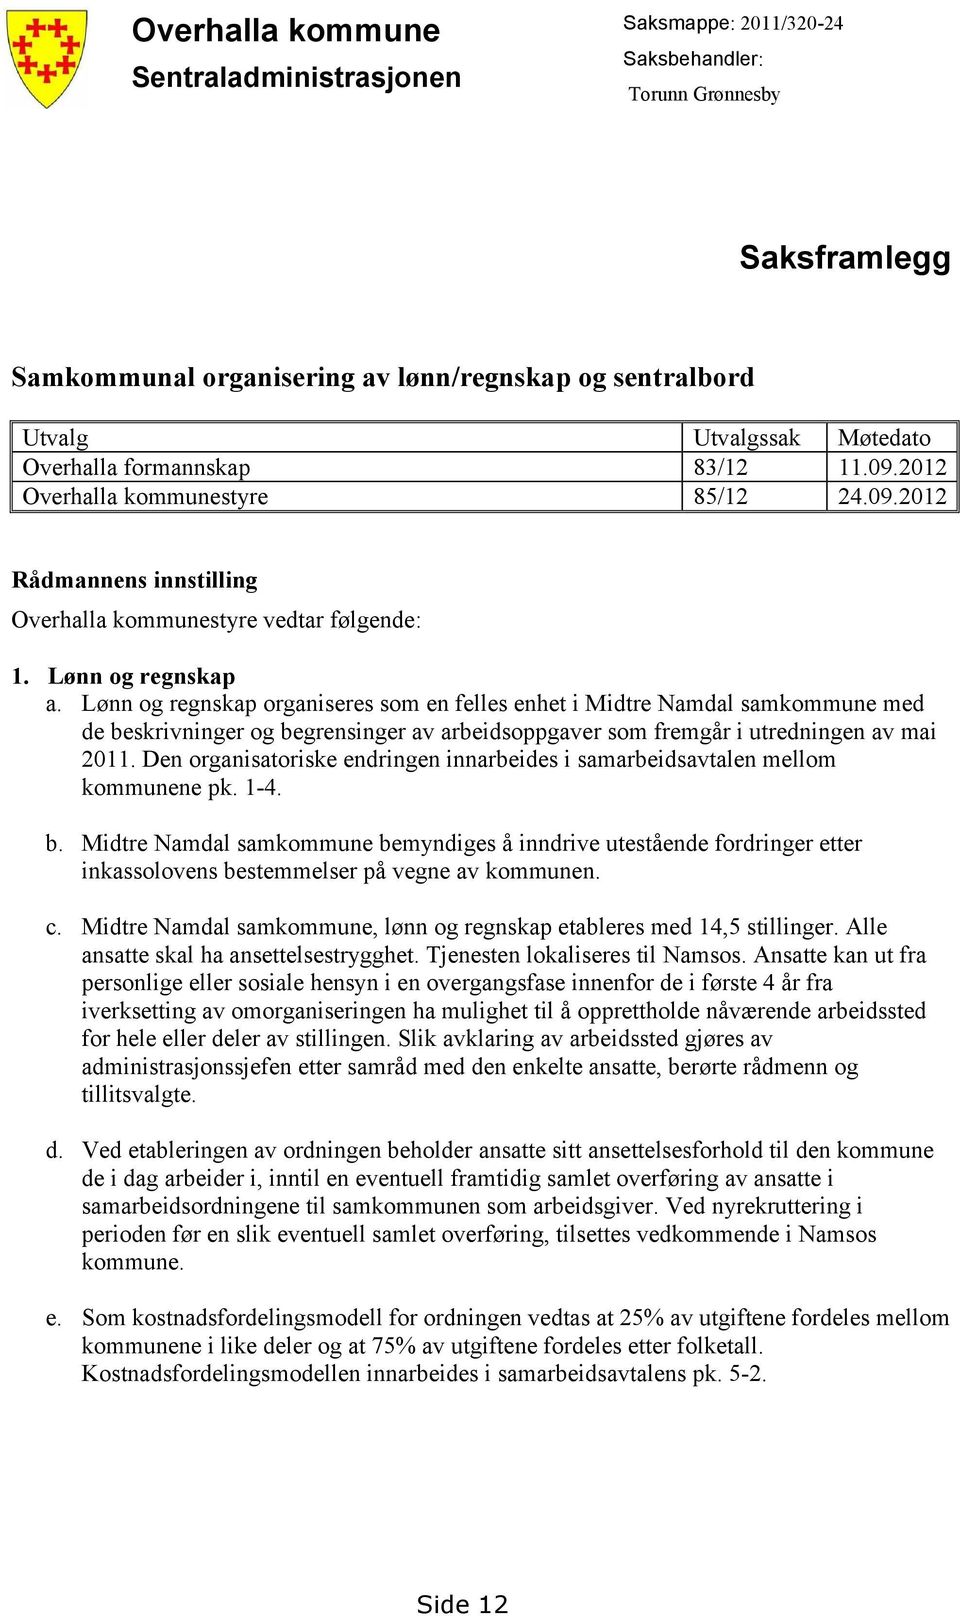 Lønn og regnskap organiseres som en felles enhet i Midtre Namdal samkommune med de beskrivninger og begrensinger av arbeidsoppgaver som fremgår i utredningen av mai 2011.